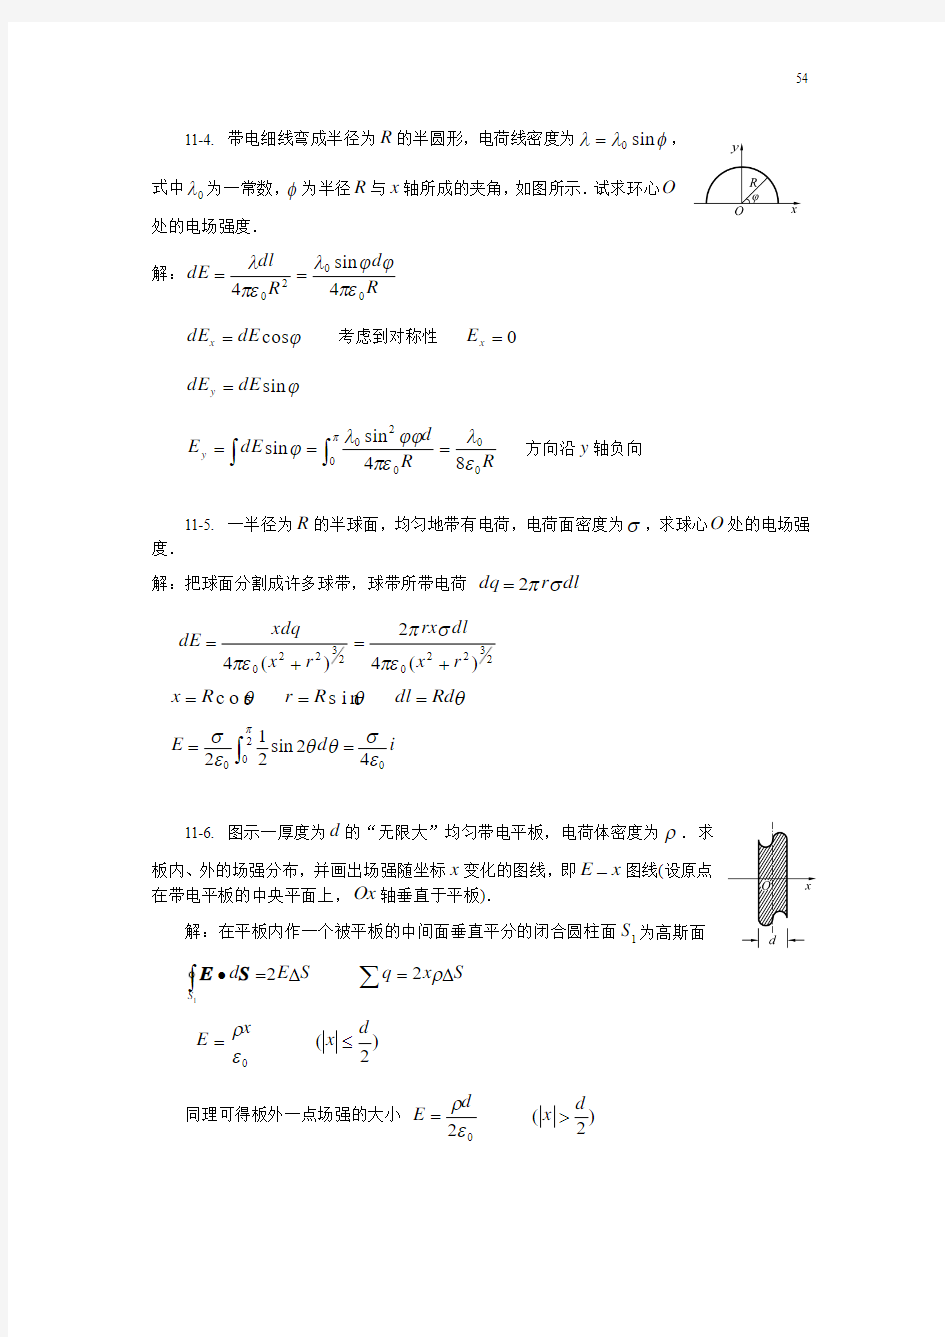 大学物理(交大3版)答案(11-15章)